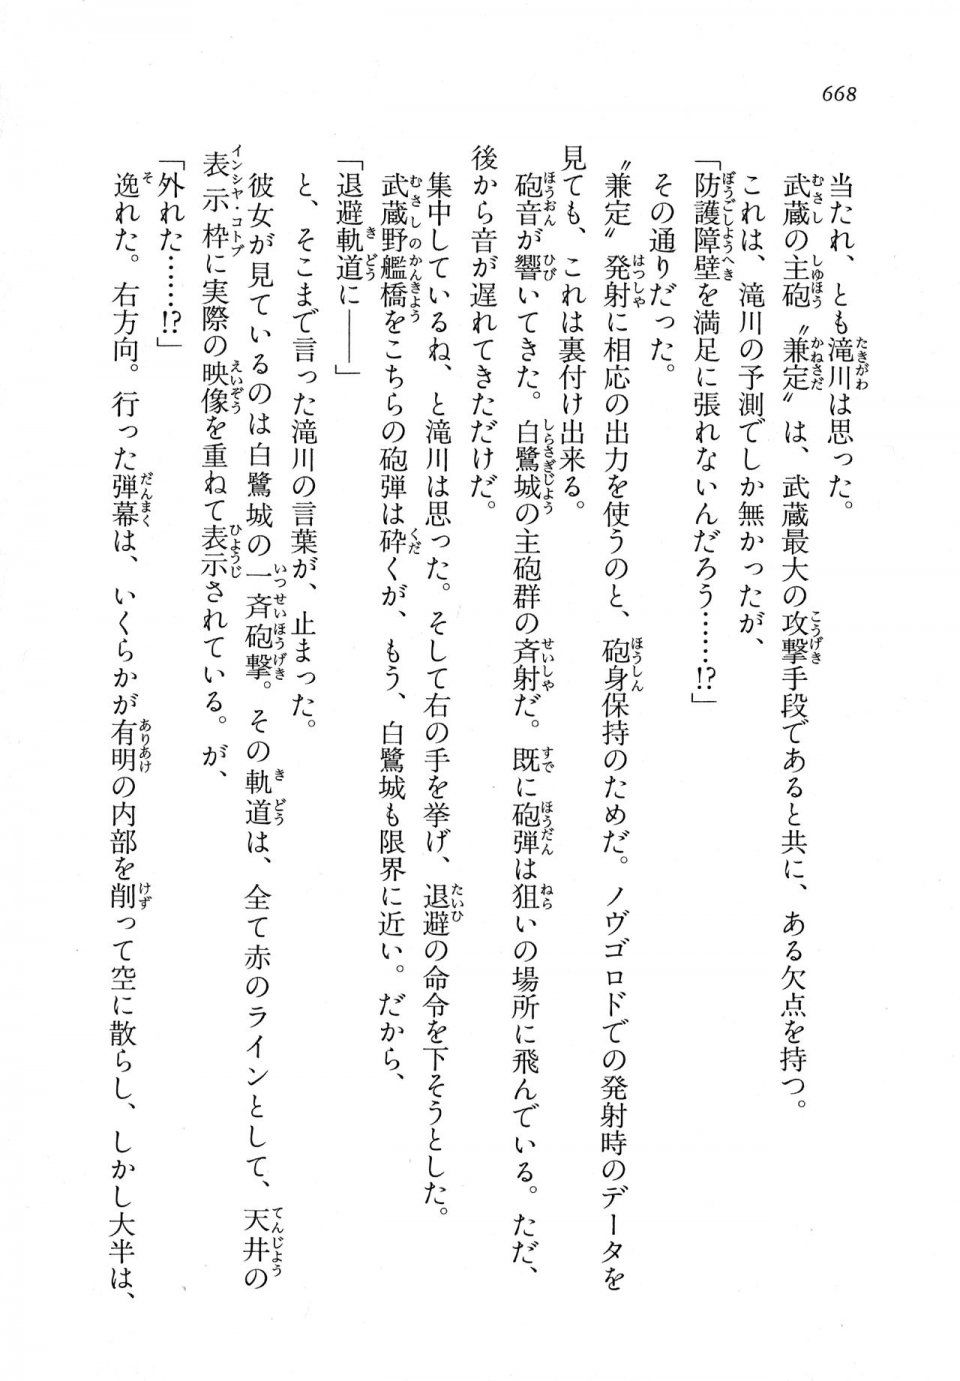 Kyoukai Senjou no Horizon LN Vol 11(5A) - Photo #668